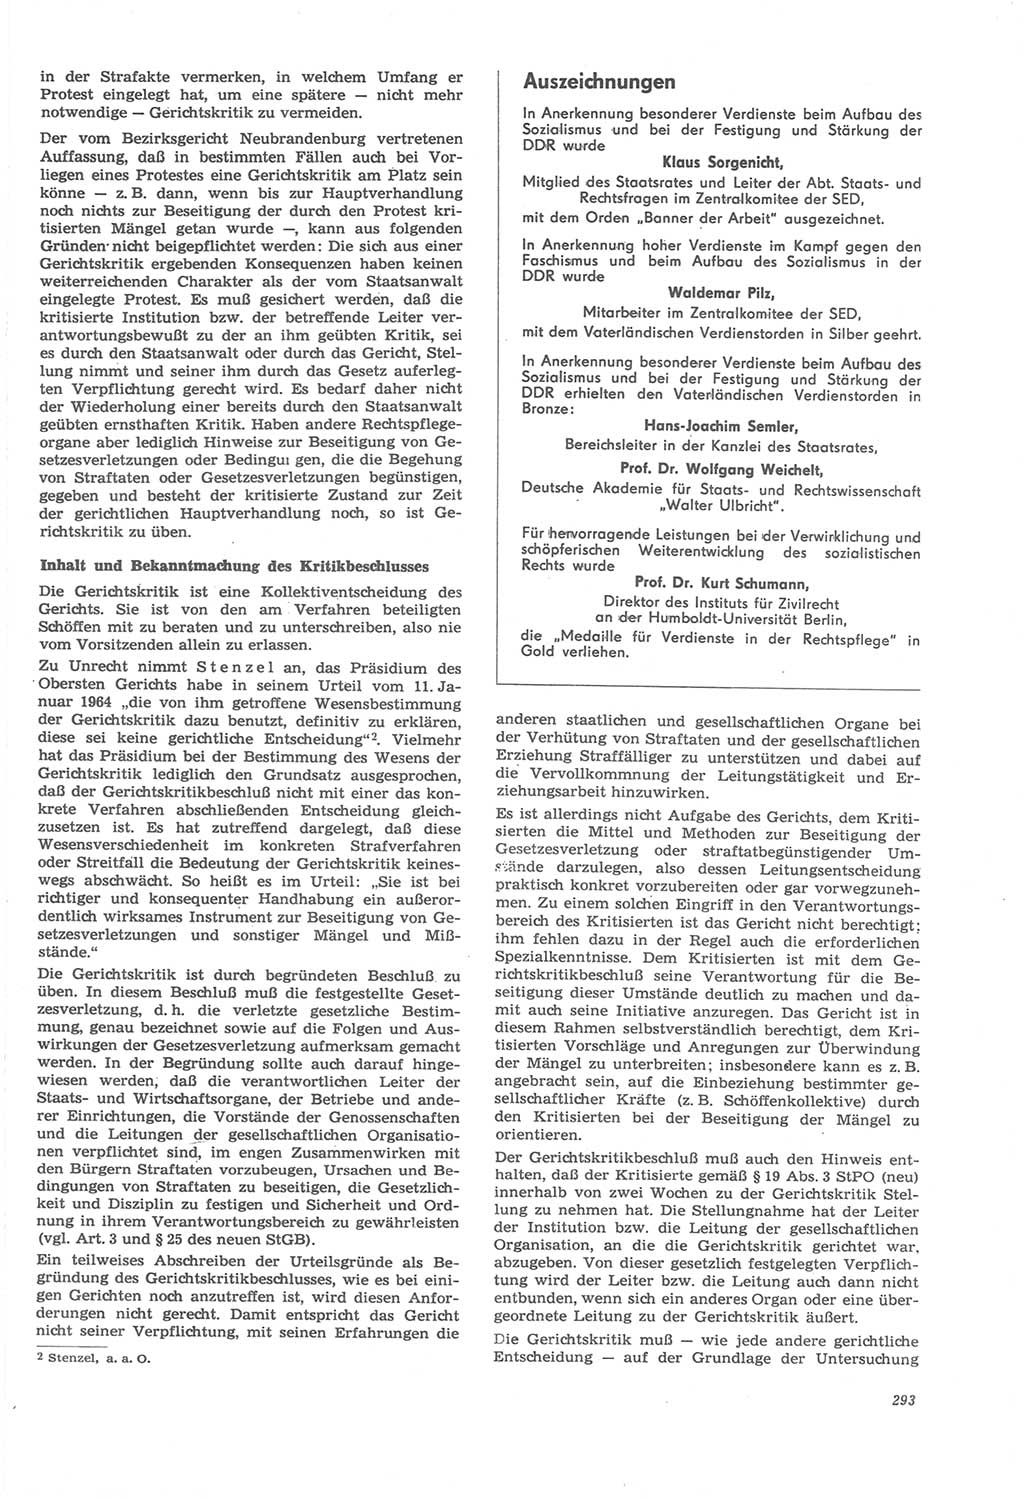 Neue Justiz (NJ), Zeitschrift für Recht und Rechtswissenschaft [Deutsche Demokratische Republik (DDR)], 22. Jahrgang 1968, Seite 293 (NJ DDR 1968, S. 293)